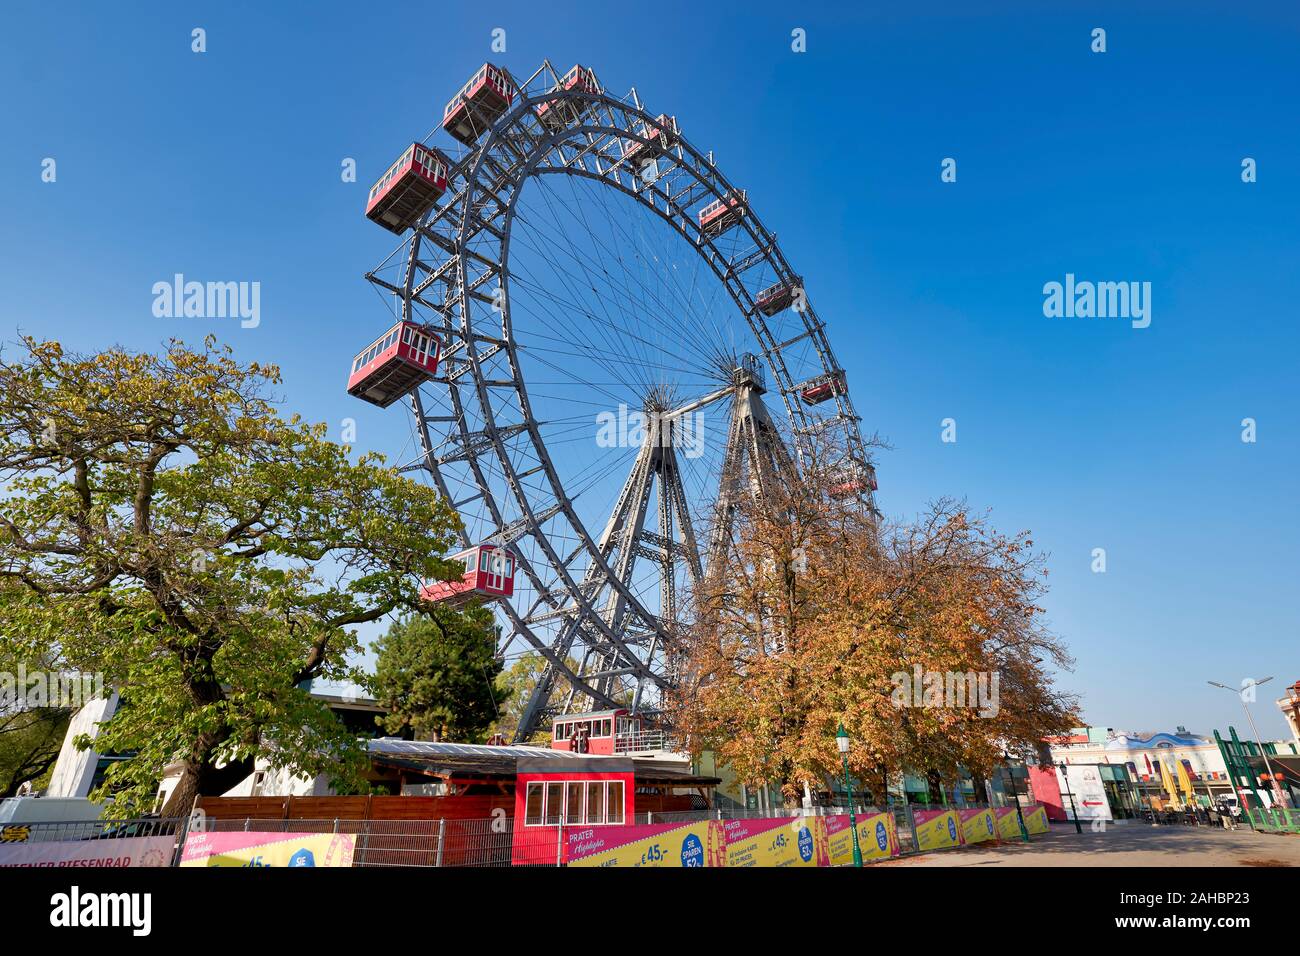 Roue Panoramique Riesenrad. Prater Parc. La grande roue la plus ancienne dans le monde. Vienne Autriche Banque D'Images